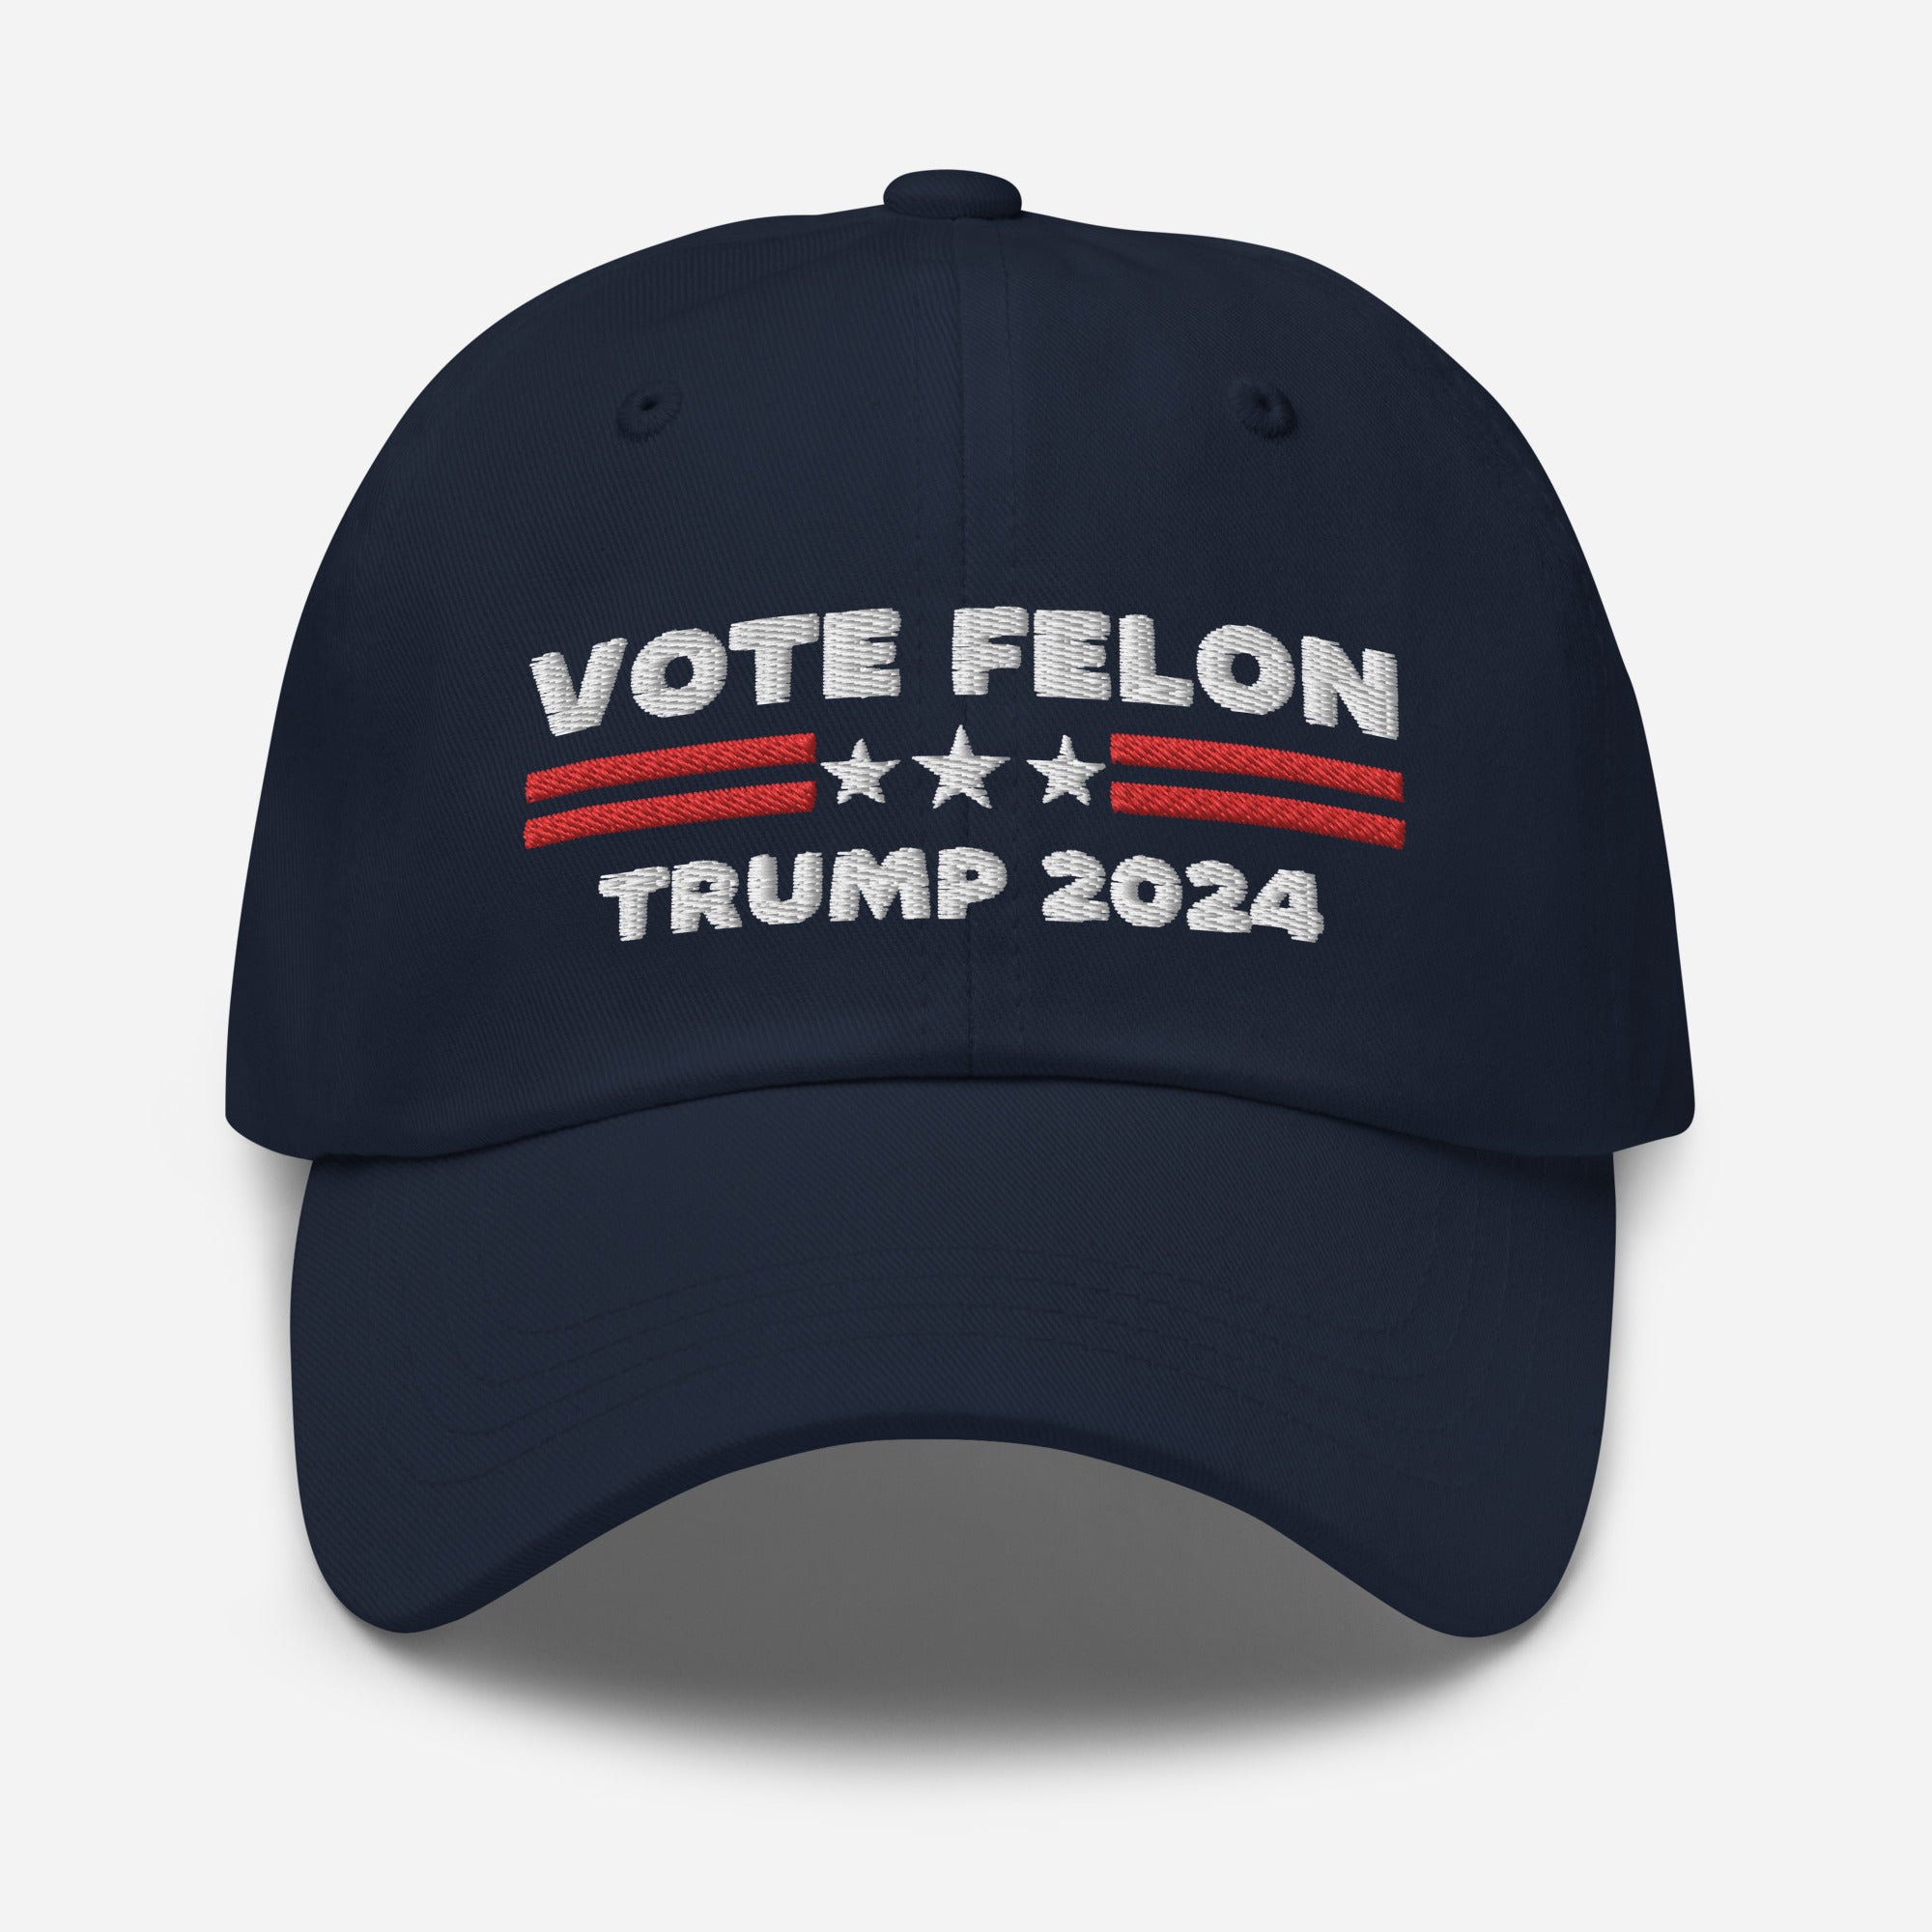 Vote Felon 2024 Sombrero de papá, Presidente condenado, Sombrero Trump 2024, Regalos republicanos, Gorra electoral, Sombreros republicanos, Sombrero político, Gorra de papá divertido